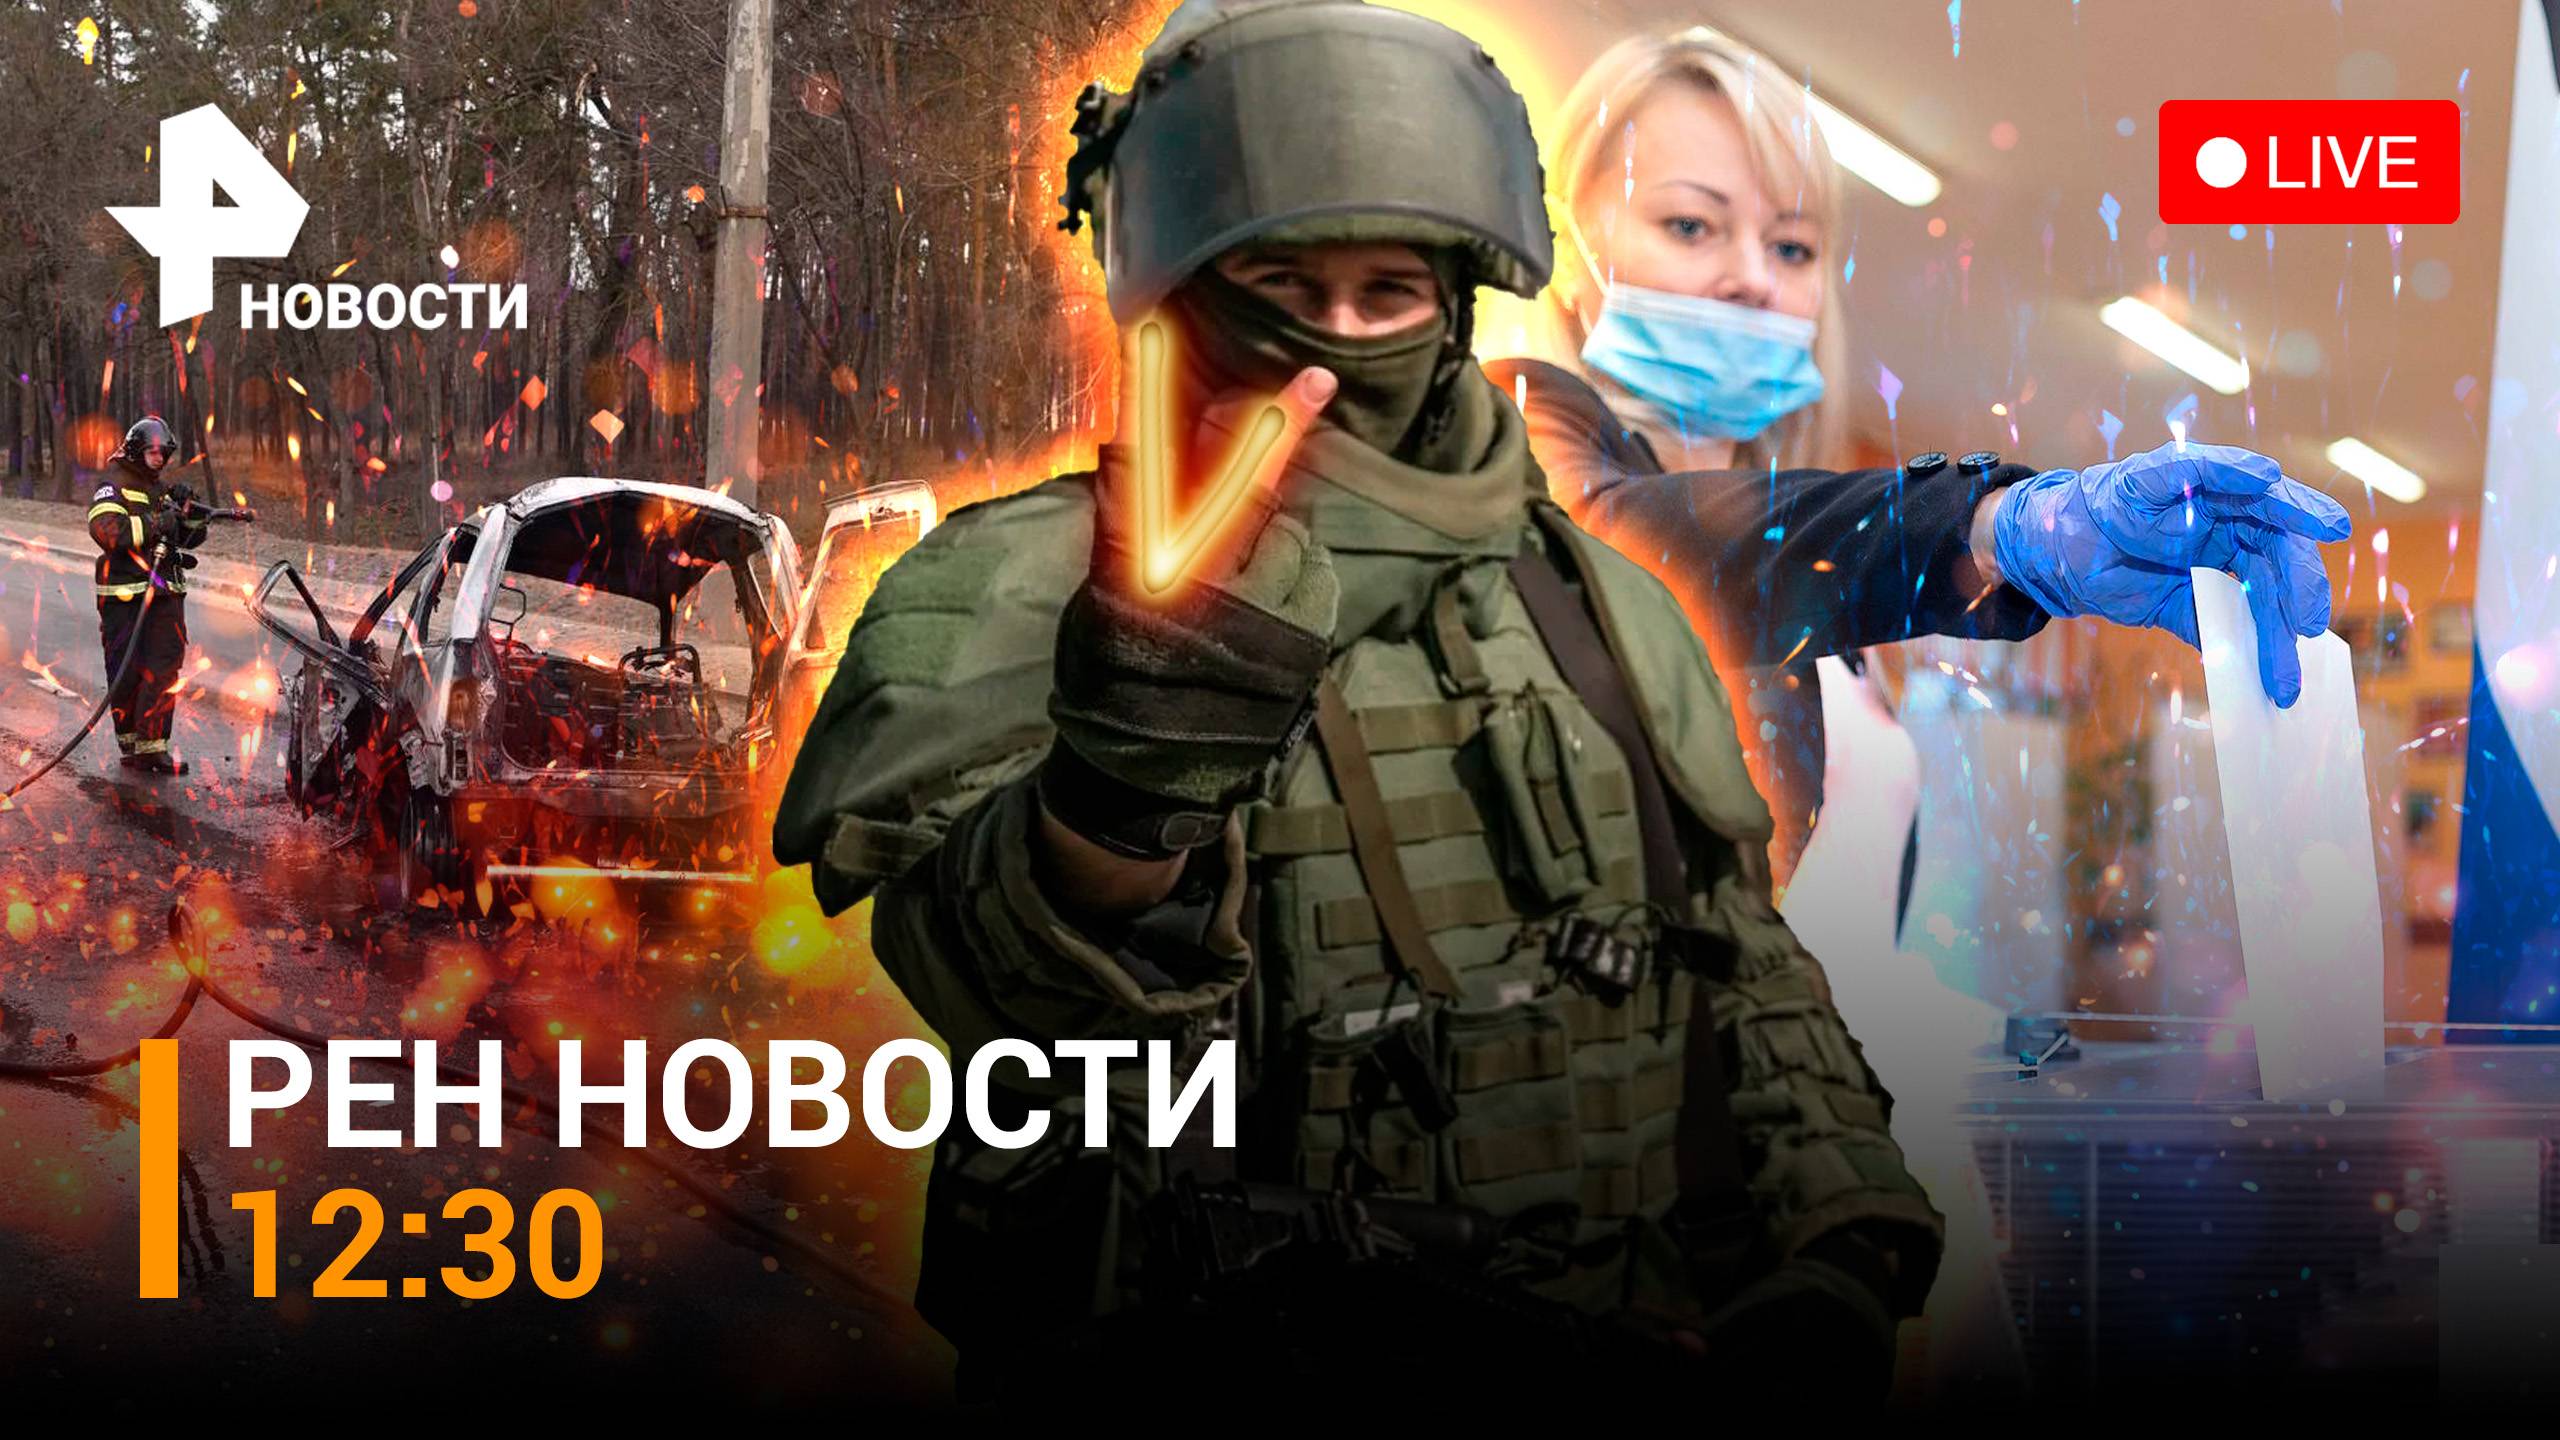 Взрыв в Белгороде — есть пострадавшие / Путин о выборах: "Шаг в будущее" / РЕН Новости 14.03, 12:30